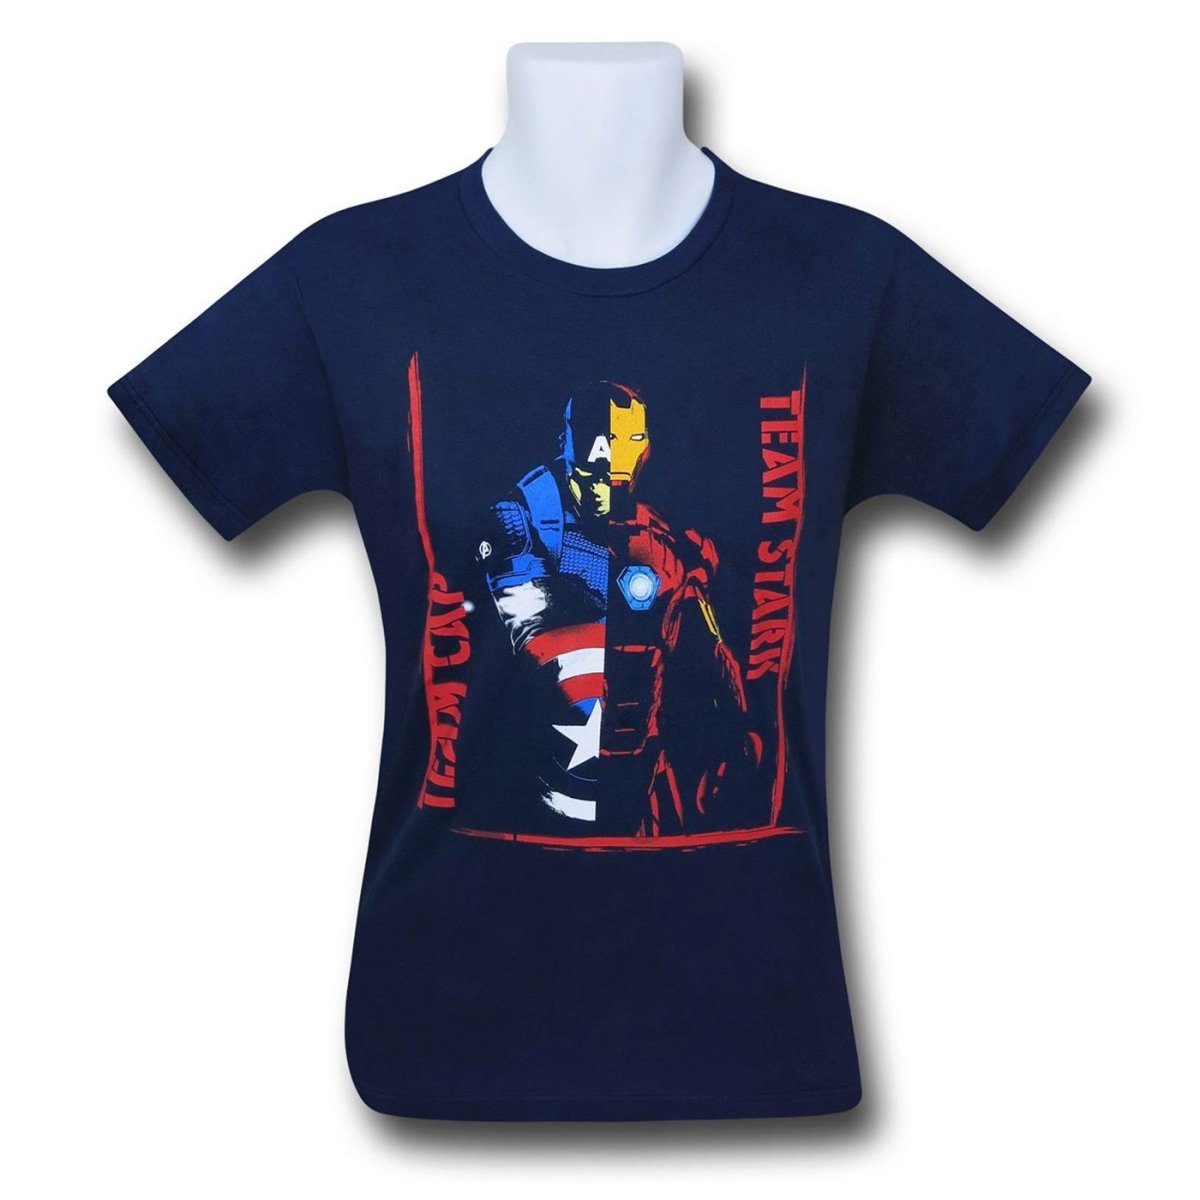 Unbeatablesale Com For 1108464 Marvel Comics Head Flag Burnout Toddler T Shirt Size 4 Fandom Shop - team iron man t shirt roblox